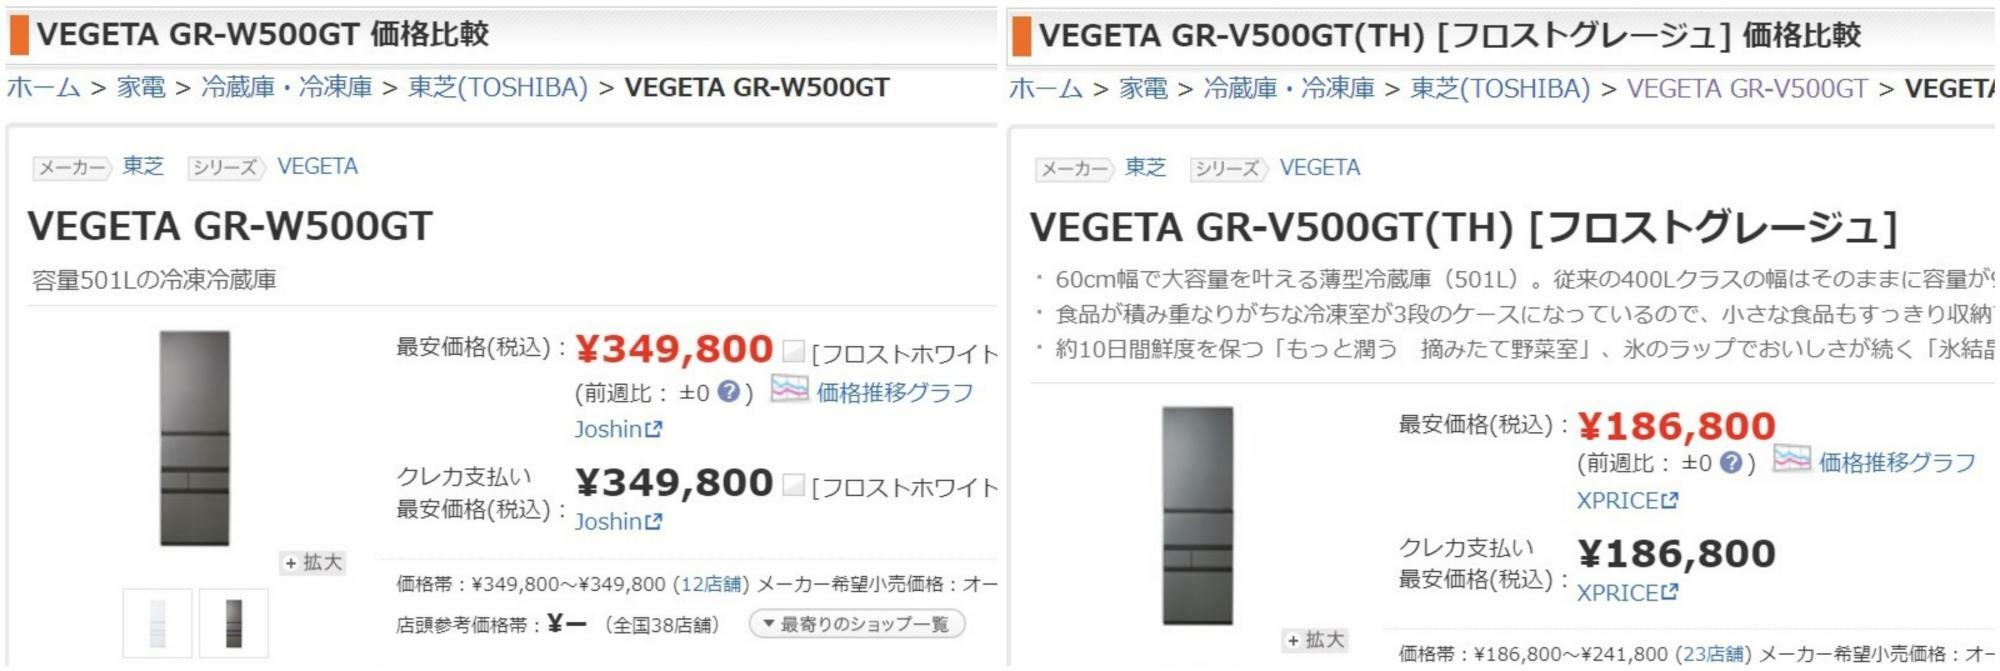 東芝の冷蔵庫の価格比較をすると、ひとつ世代が違うだけで16万円も価格差がある。